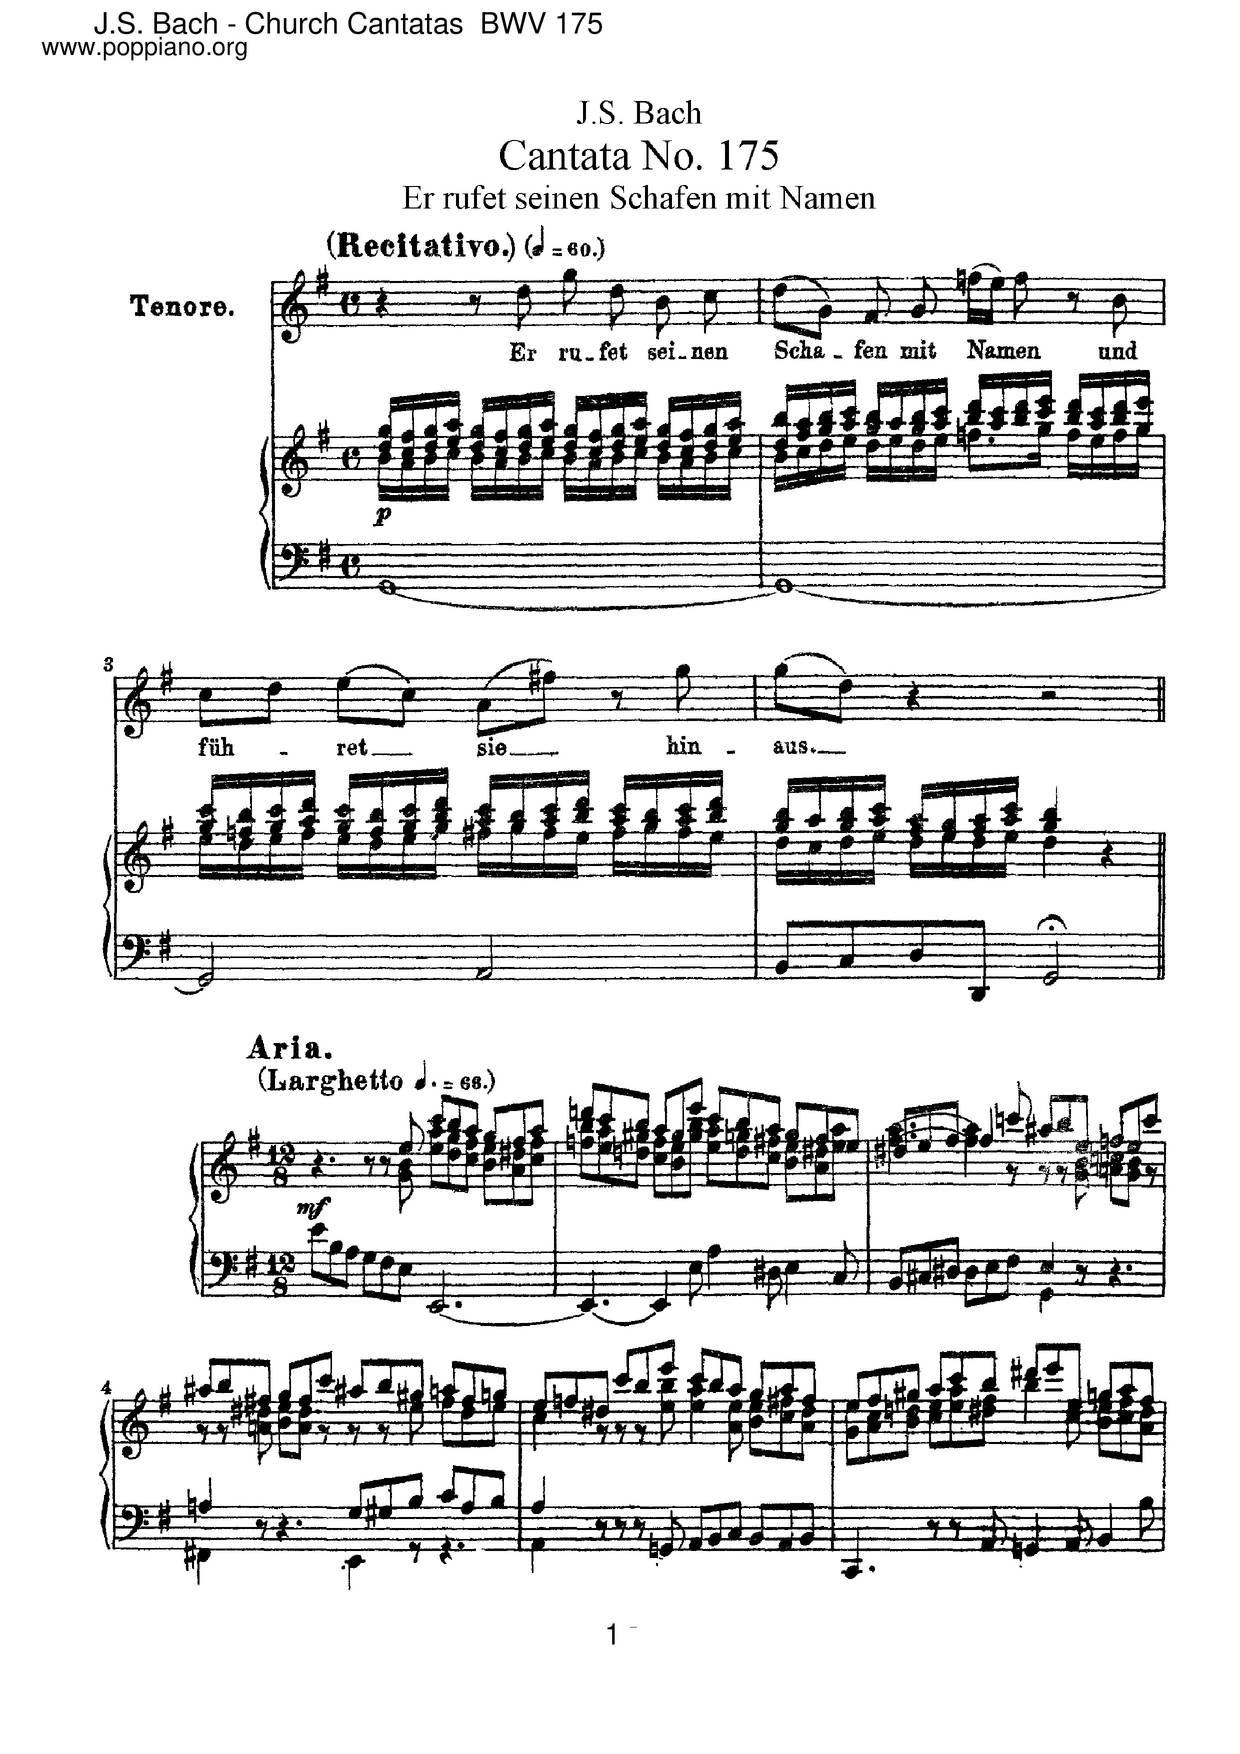 Er Rufet Seinen Schafen Mit Namen, BWV 175 Score